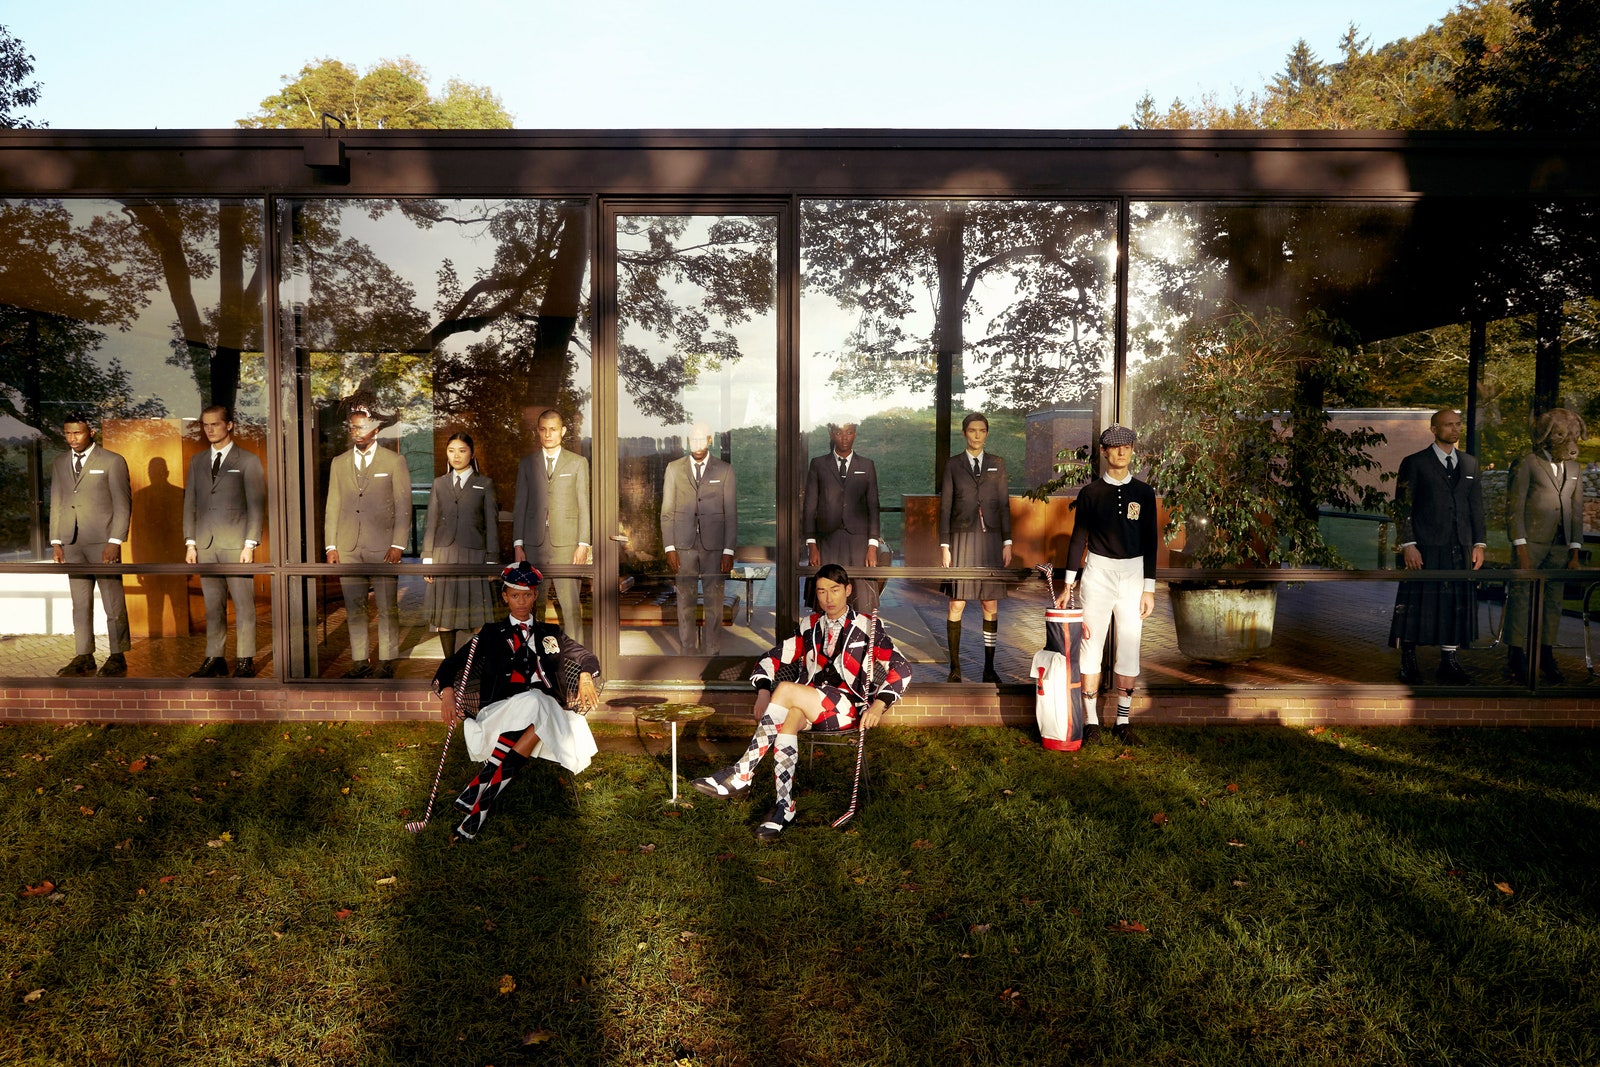 Мода и архитектура новая коллекция Тома Брауна в “Стеклянном доме” Филипа Джонсона